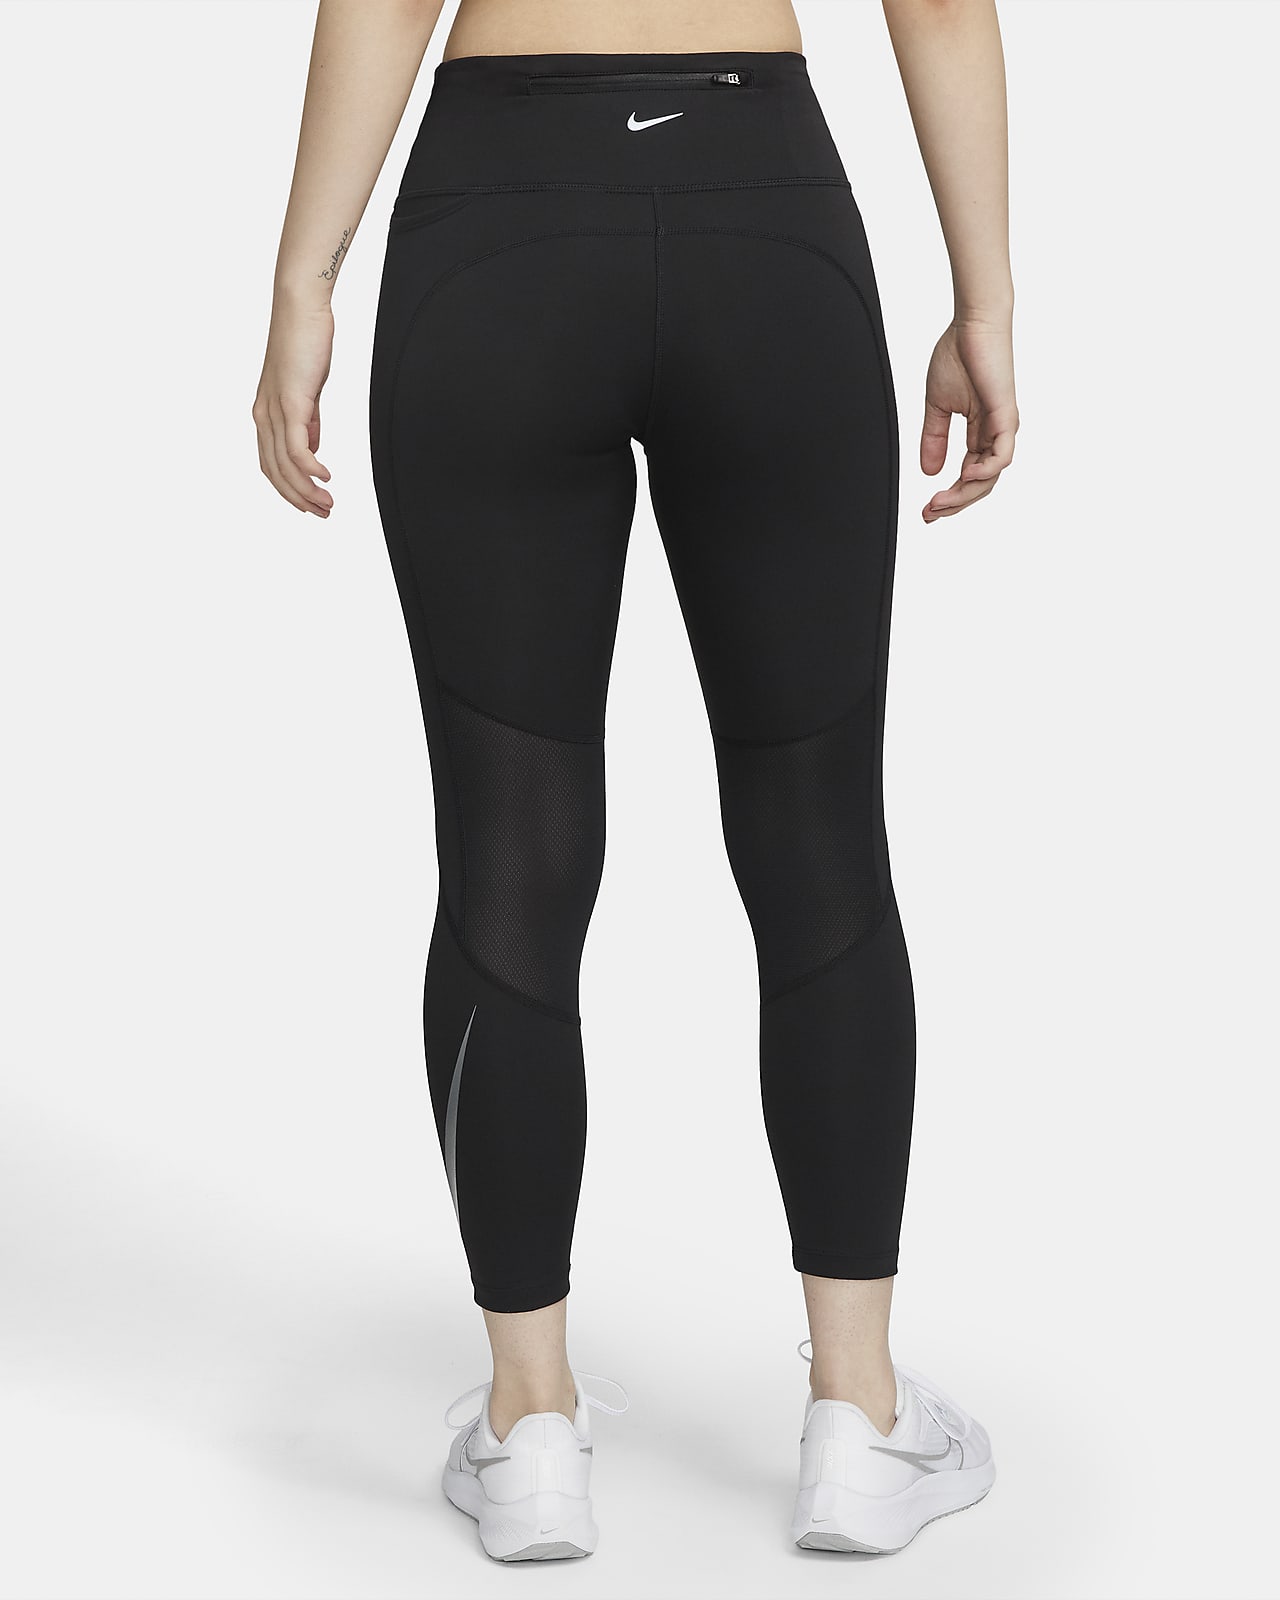 Nike Running - Femme - Legging 7/8 en tissu à séchage rapide - Violet